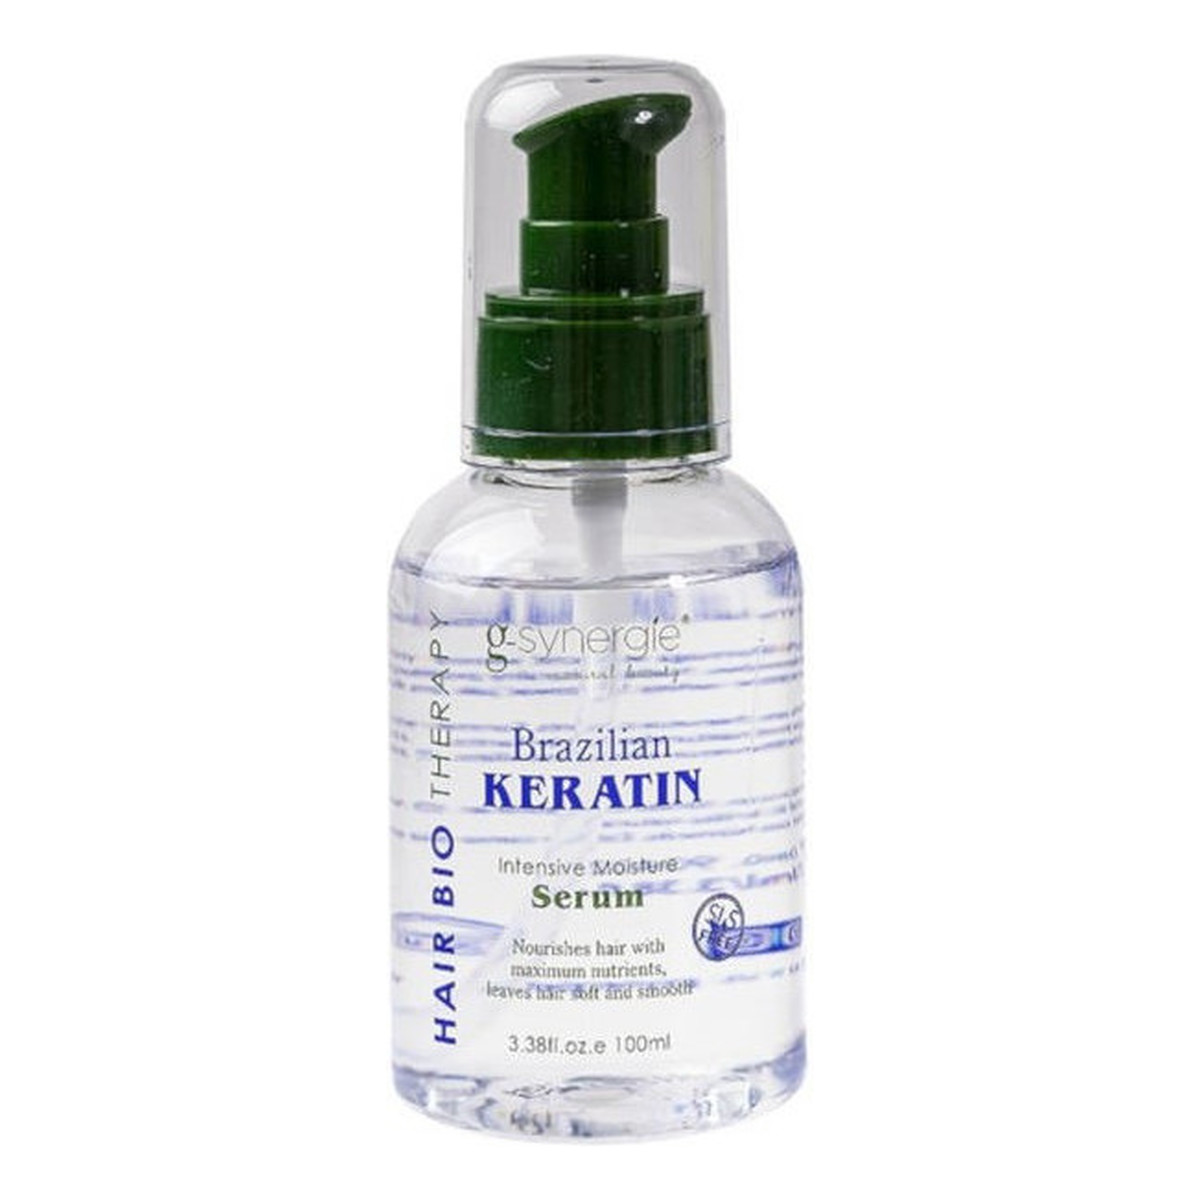 G-Synergie Brazilian Keratin Serum spray wzmacniający włosy 100ml